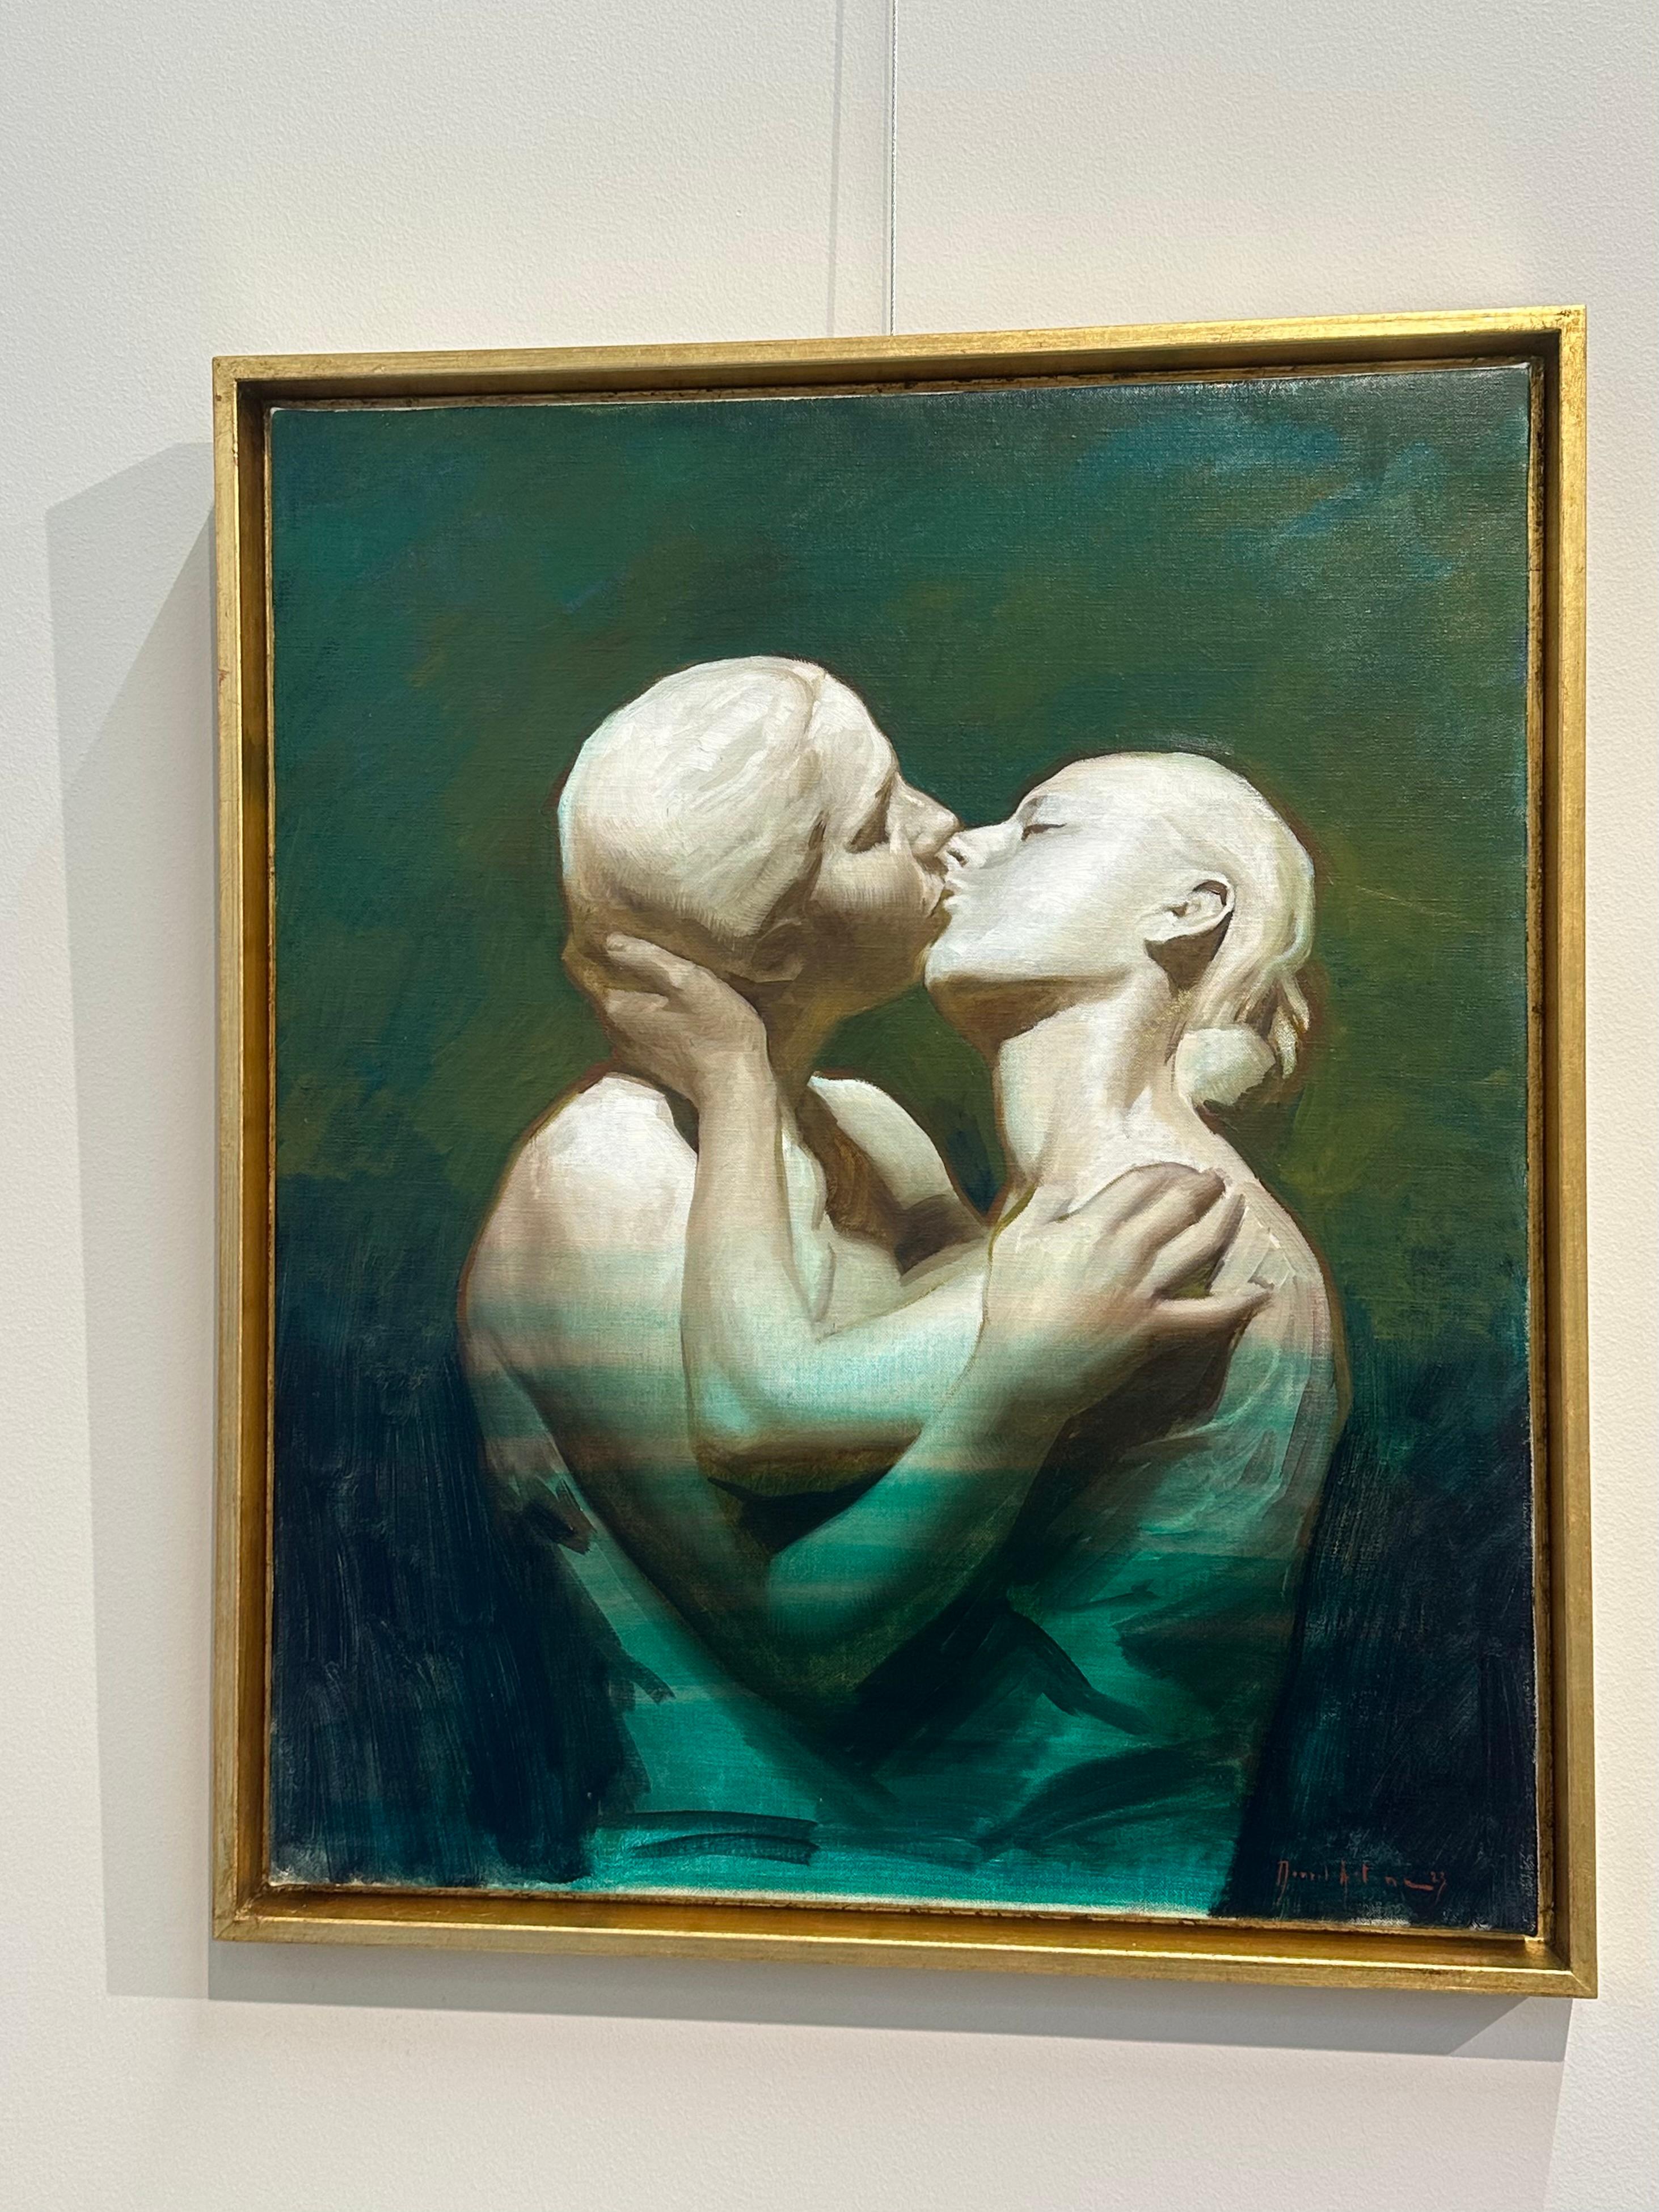 Hommage à la sculpture Alimondo Ciampi- Peinture contemporaine du 21ème siècle  - Painting de Daniela Astone